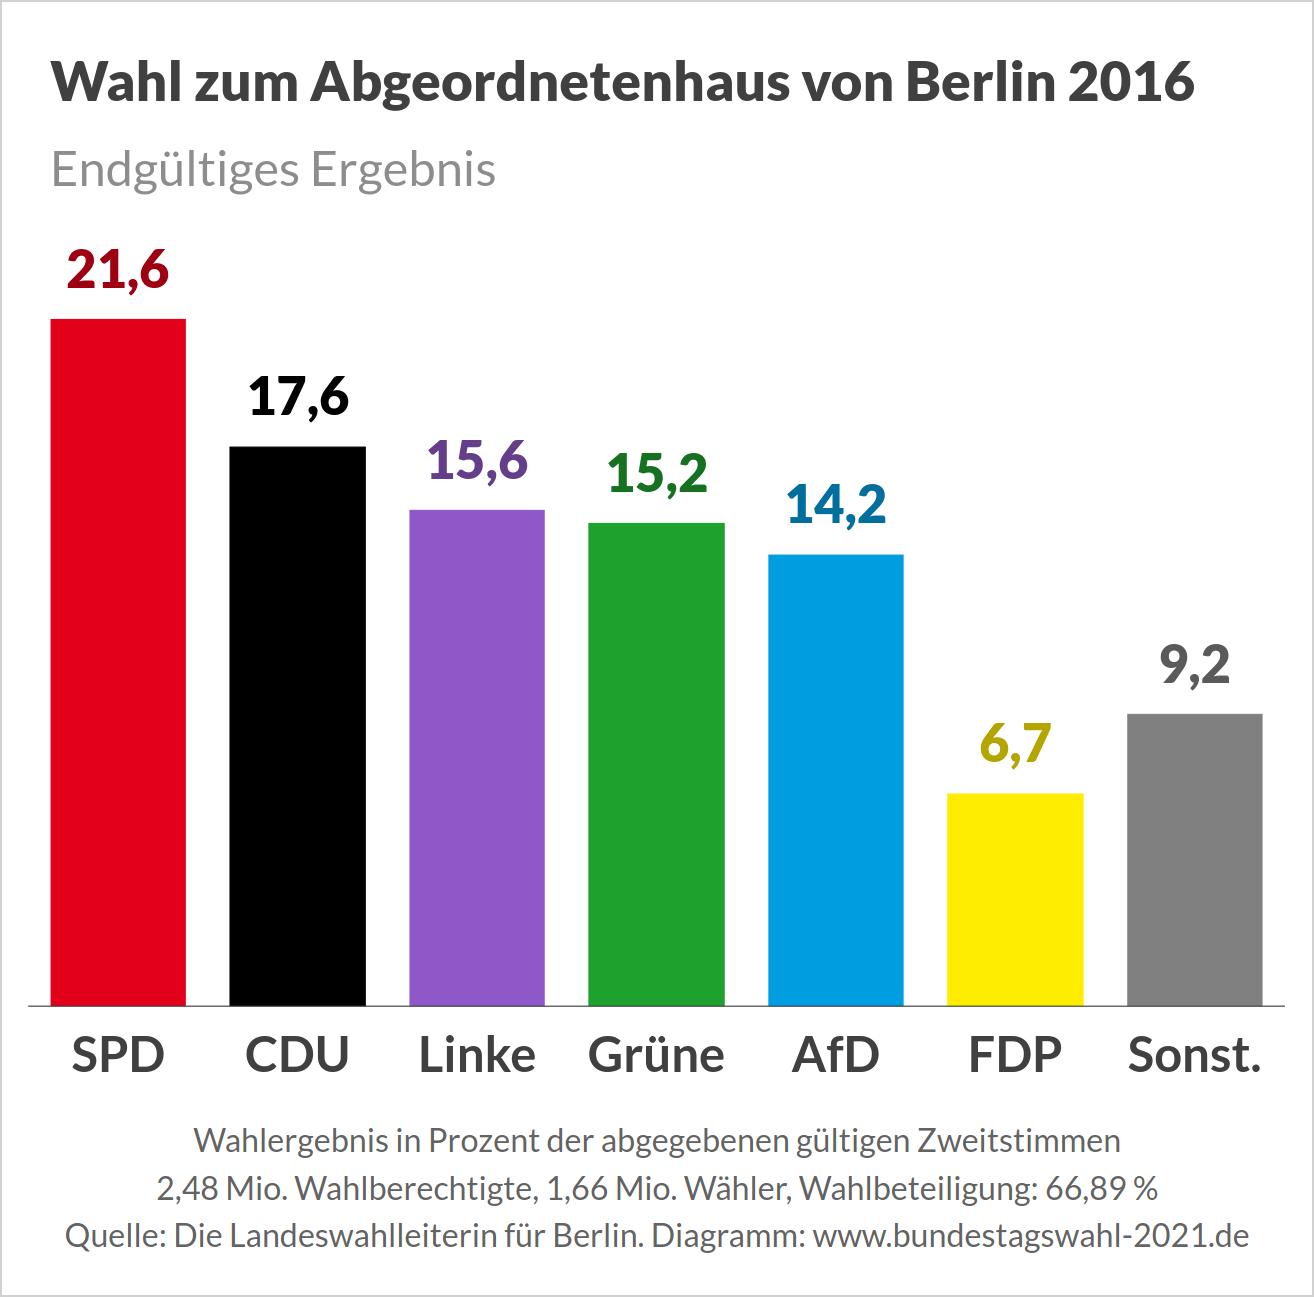 Wahl zum Abgeordnetenhaus von Berlin - Endgültiges Ergebnis 2016